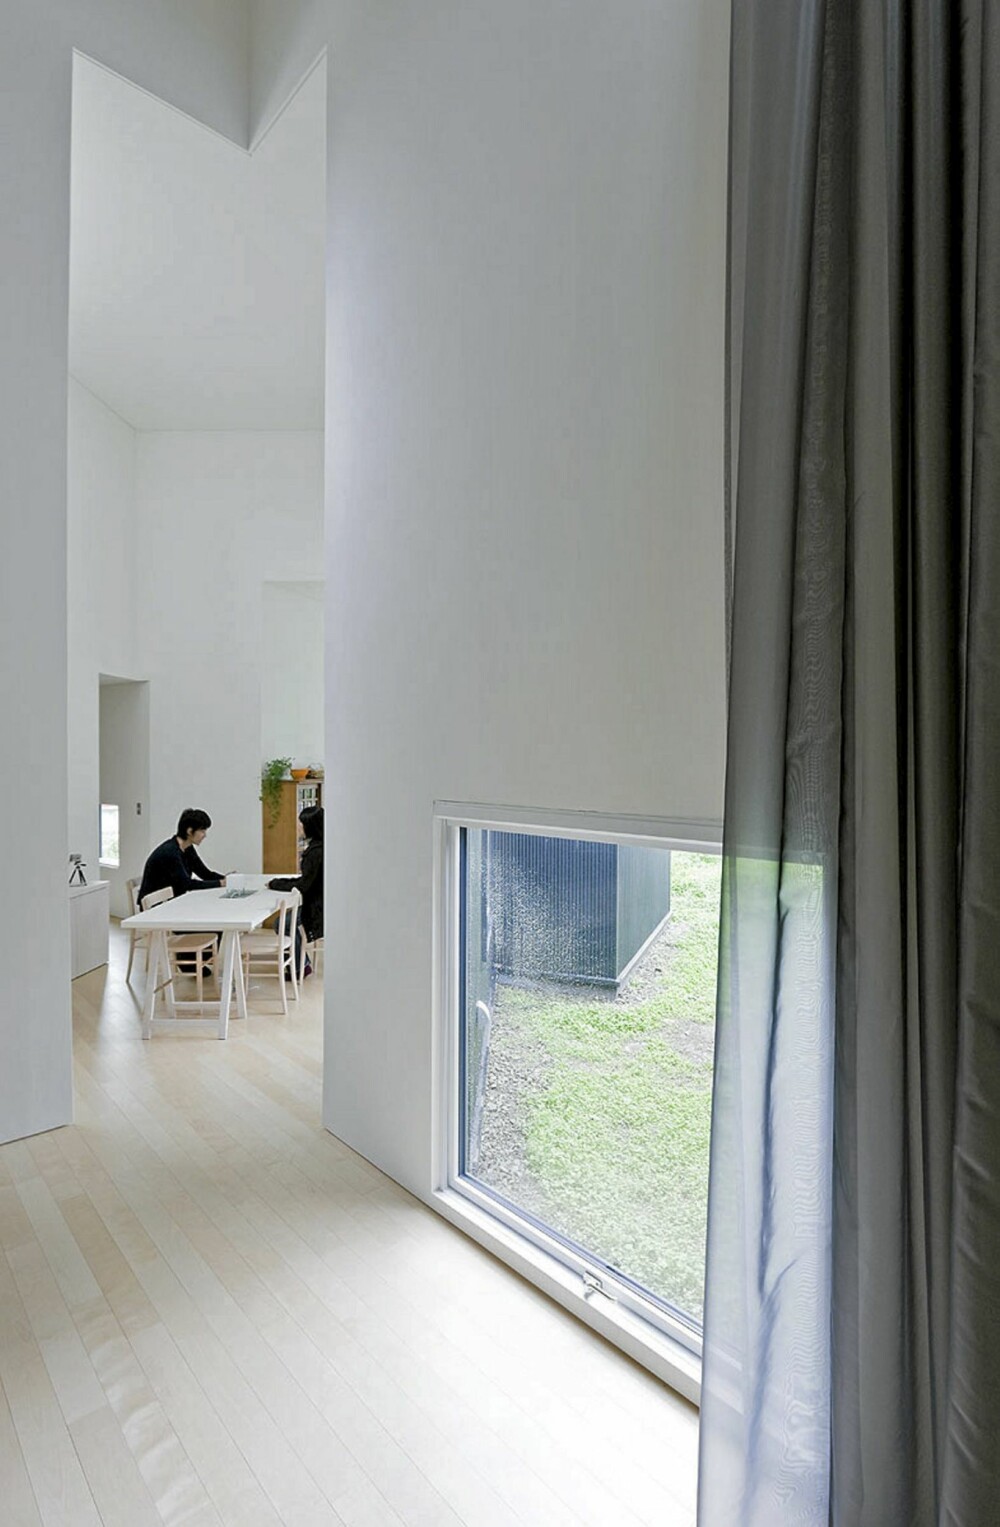 VINKLER: Den unike plasseringene av hvert element skaper mange vinkler og rom i interiøret.